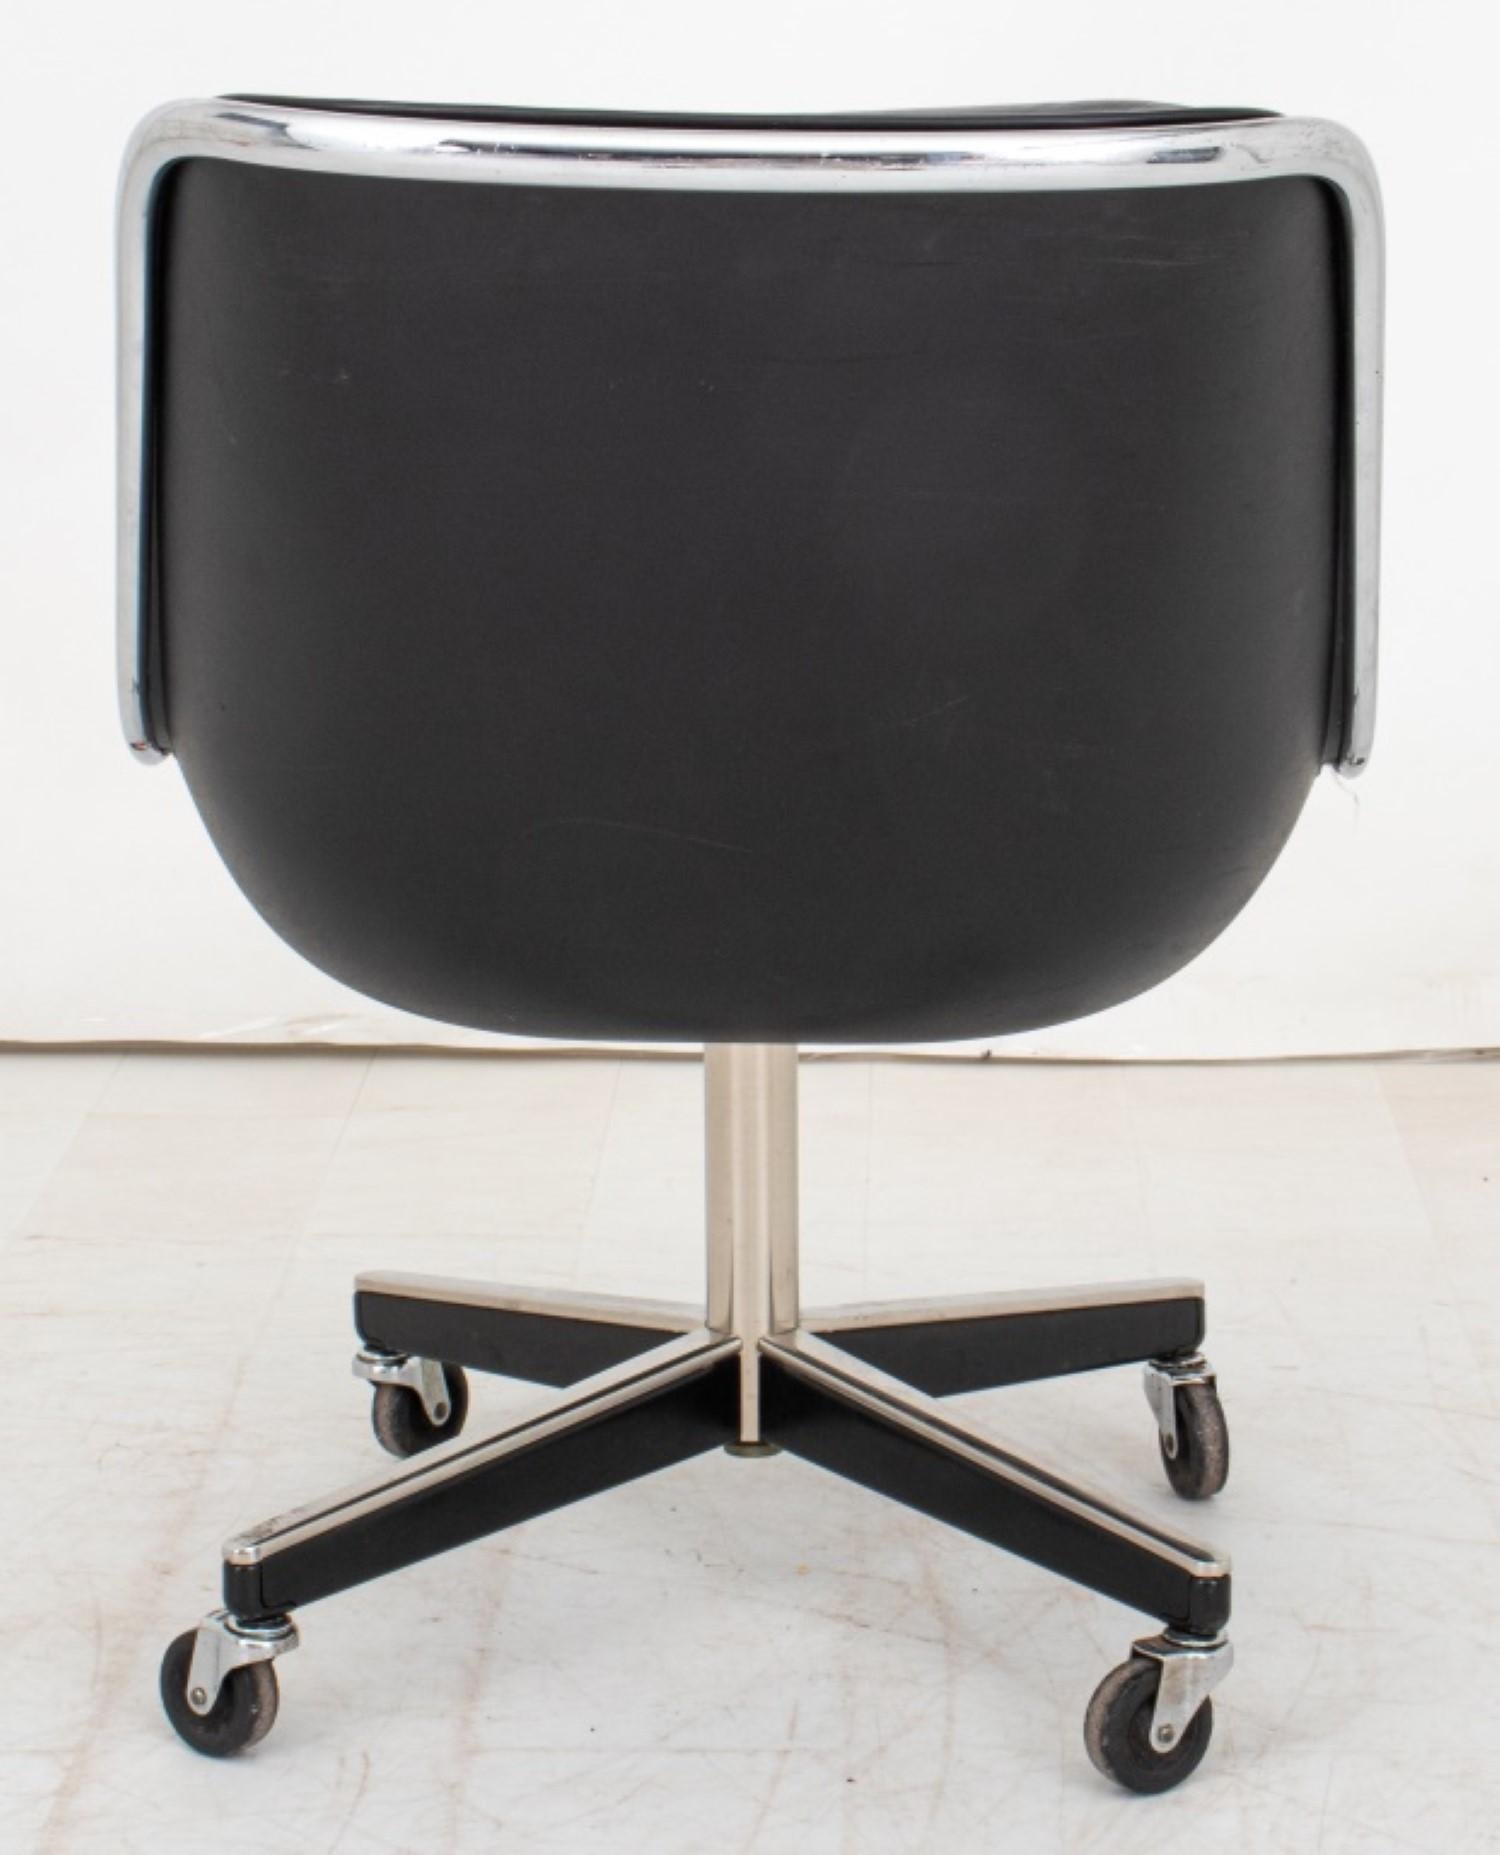 Chaise de bureau Charles Pollock pour Knoll International (1963)

Design/One : Assise et dossier en cuir noir boutonné sur une base chromée à quatre roulettes.

Dimensions : 32.25